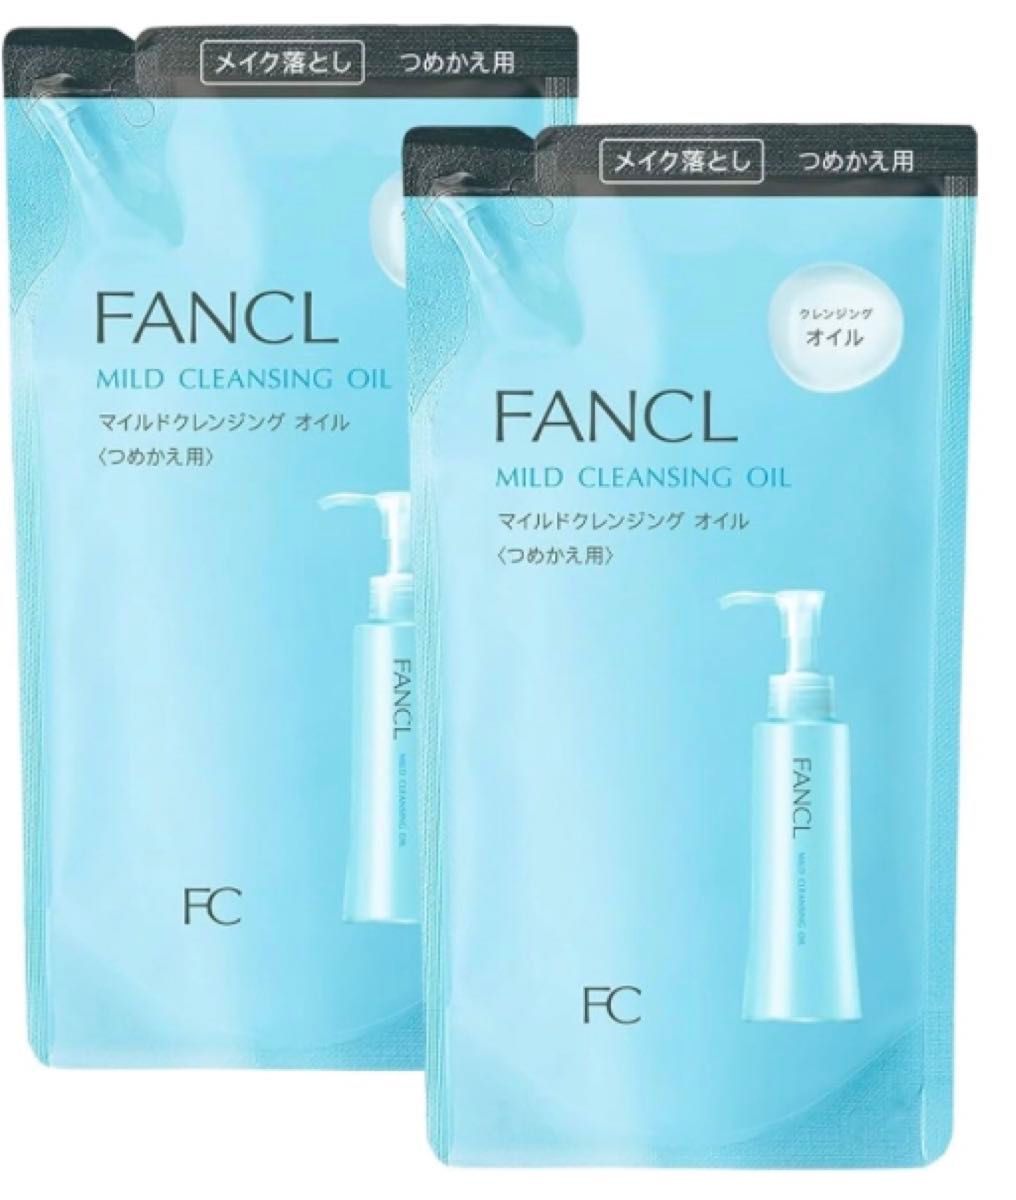 【13】ファンケル (FANCL) (新) マイルド クレンジング オイル (詰め替え用) 2本 